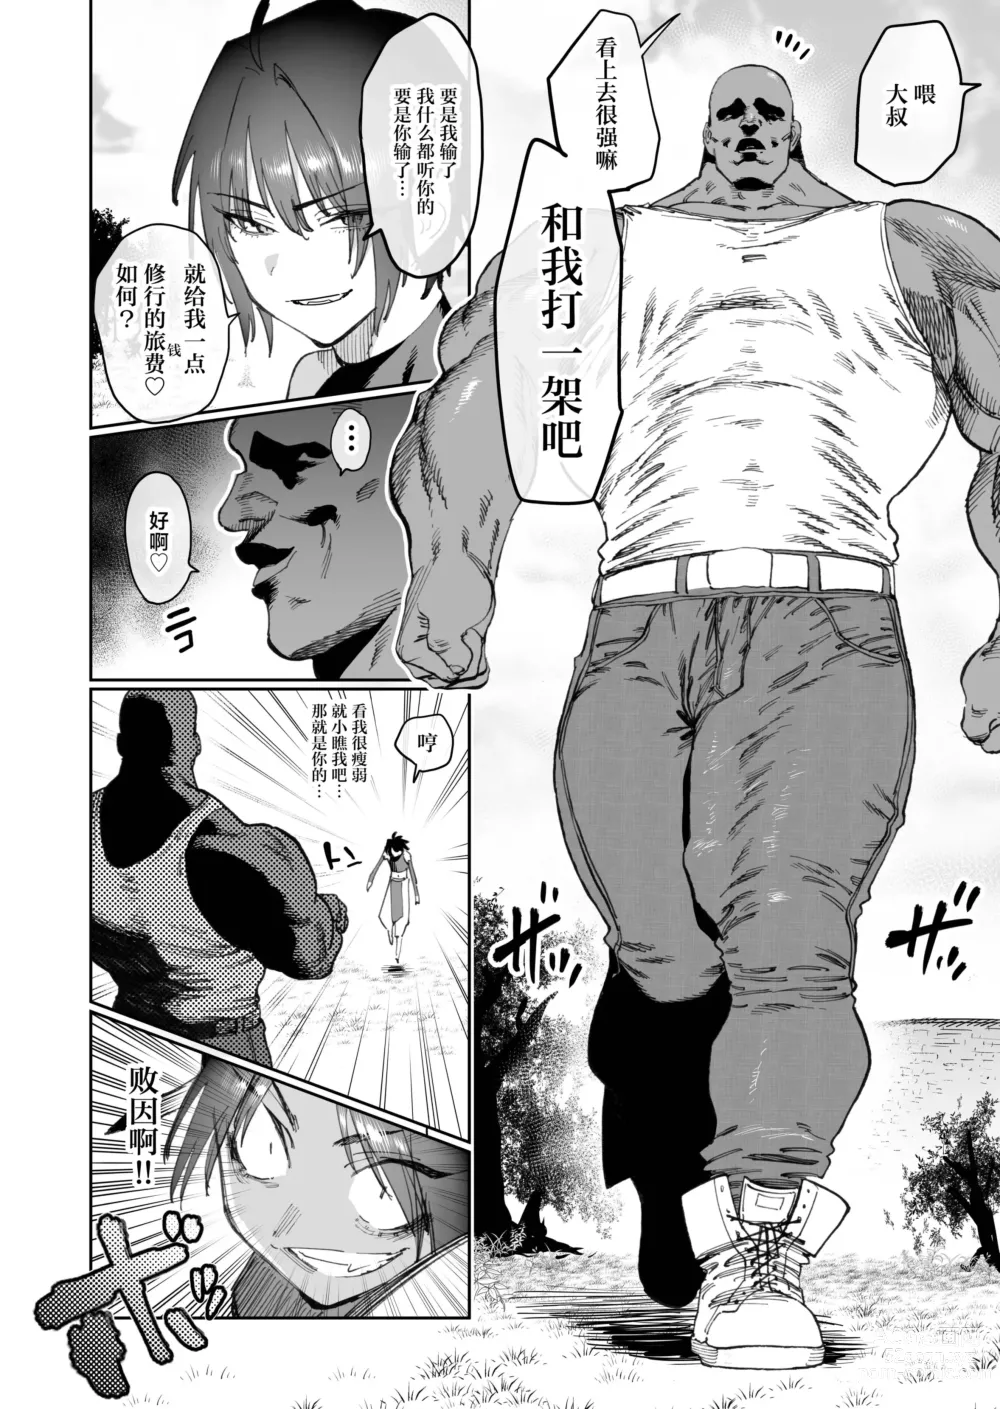 Page 7 of doujinshi 约好要变得更强大而告别的两名战友在2年后重逢时变成了母猪便器这件事